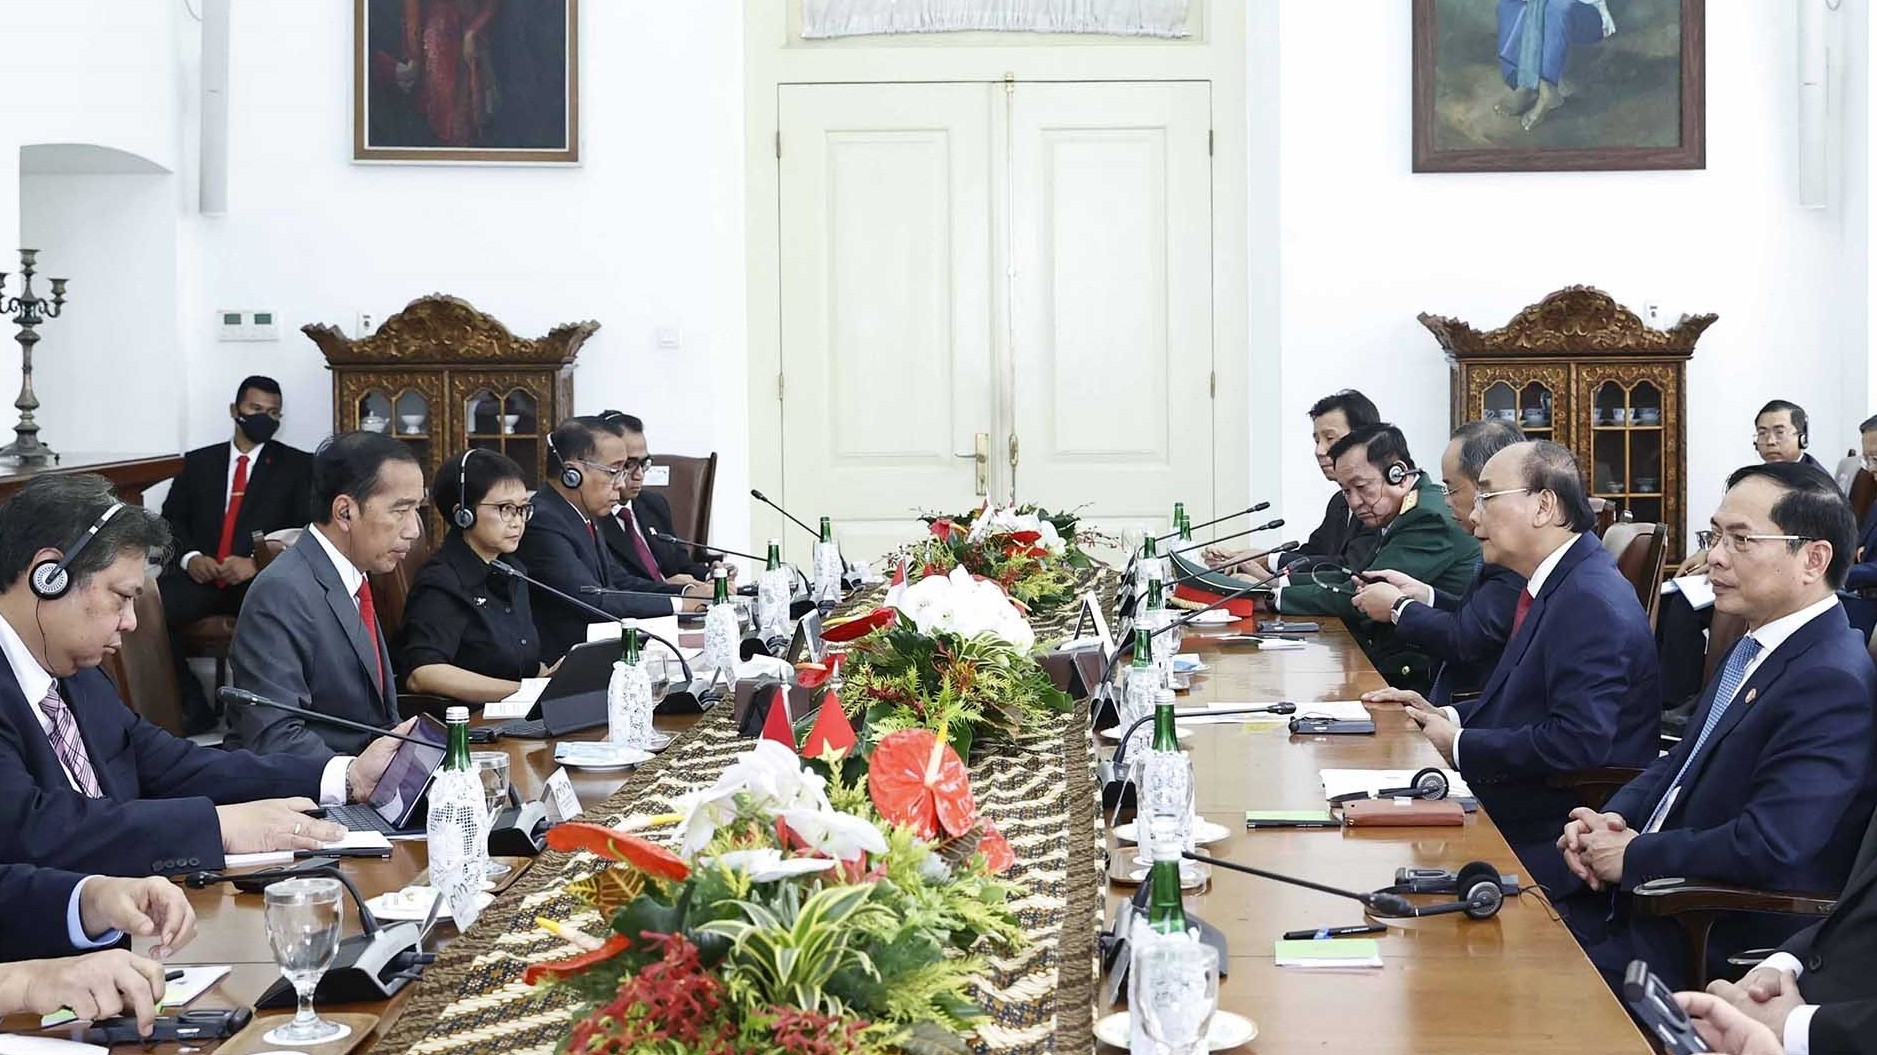 Chuyến thăm cấp Nhà nước tới Indonesia của Chủ tịch nước Nguyễn Xuân Phúc đạt được những kết quả rất toàn diện, thực chất và cụ thể